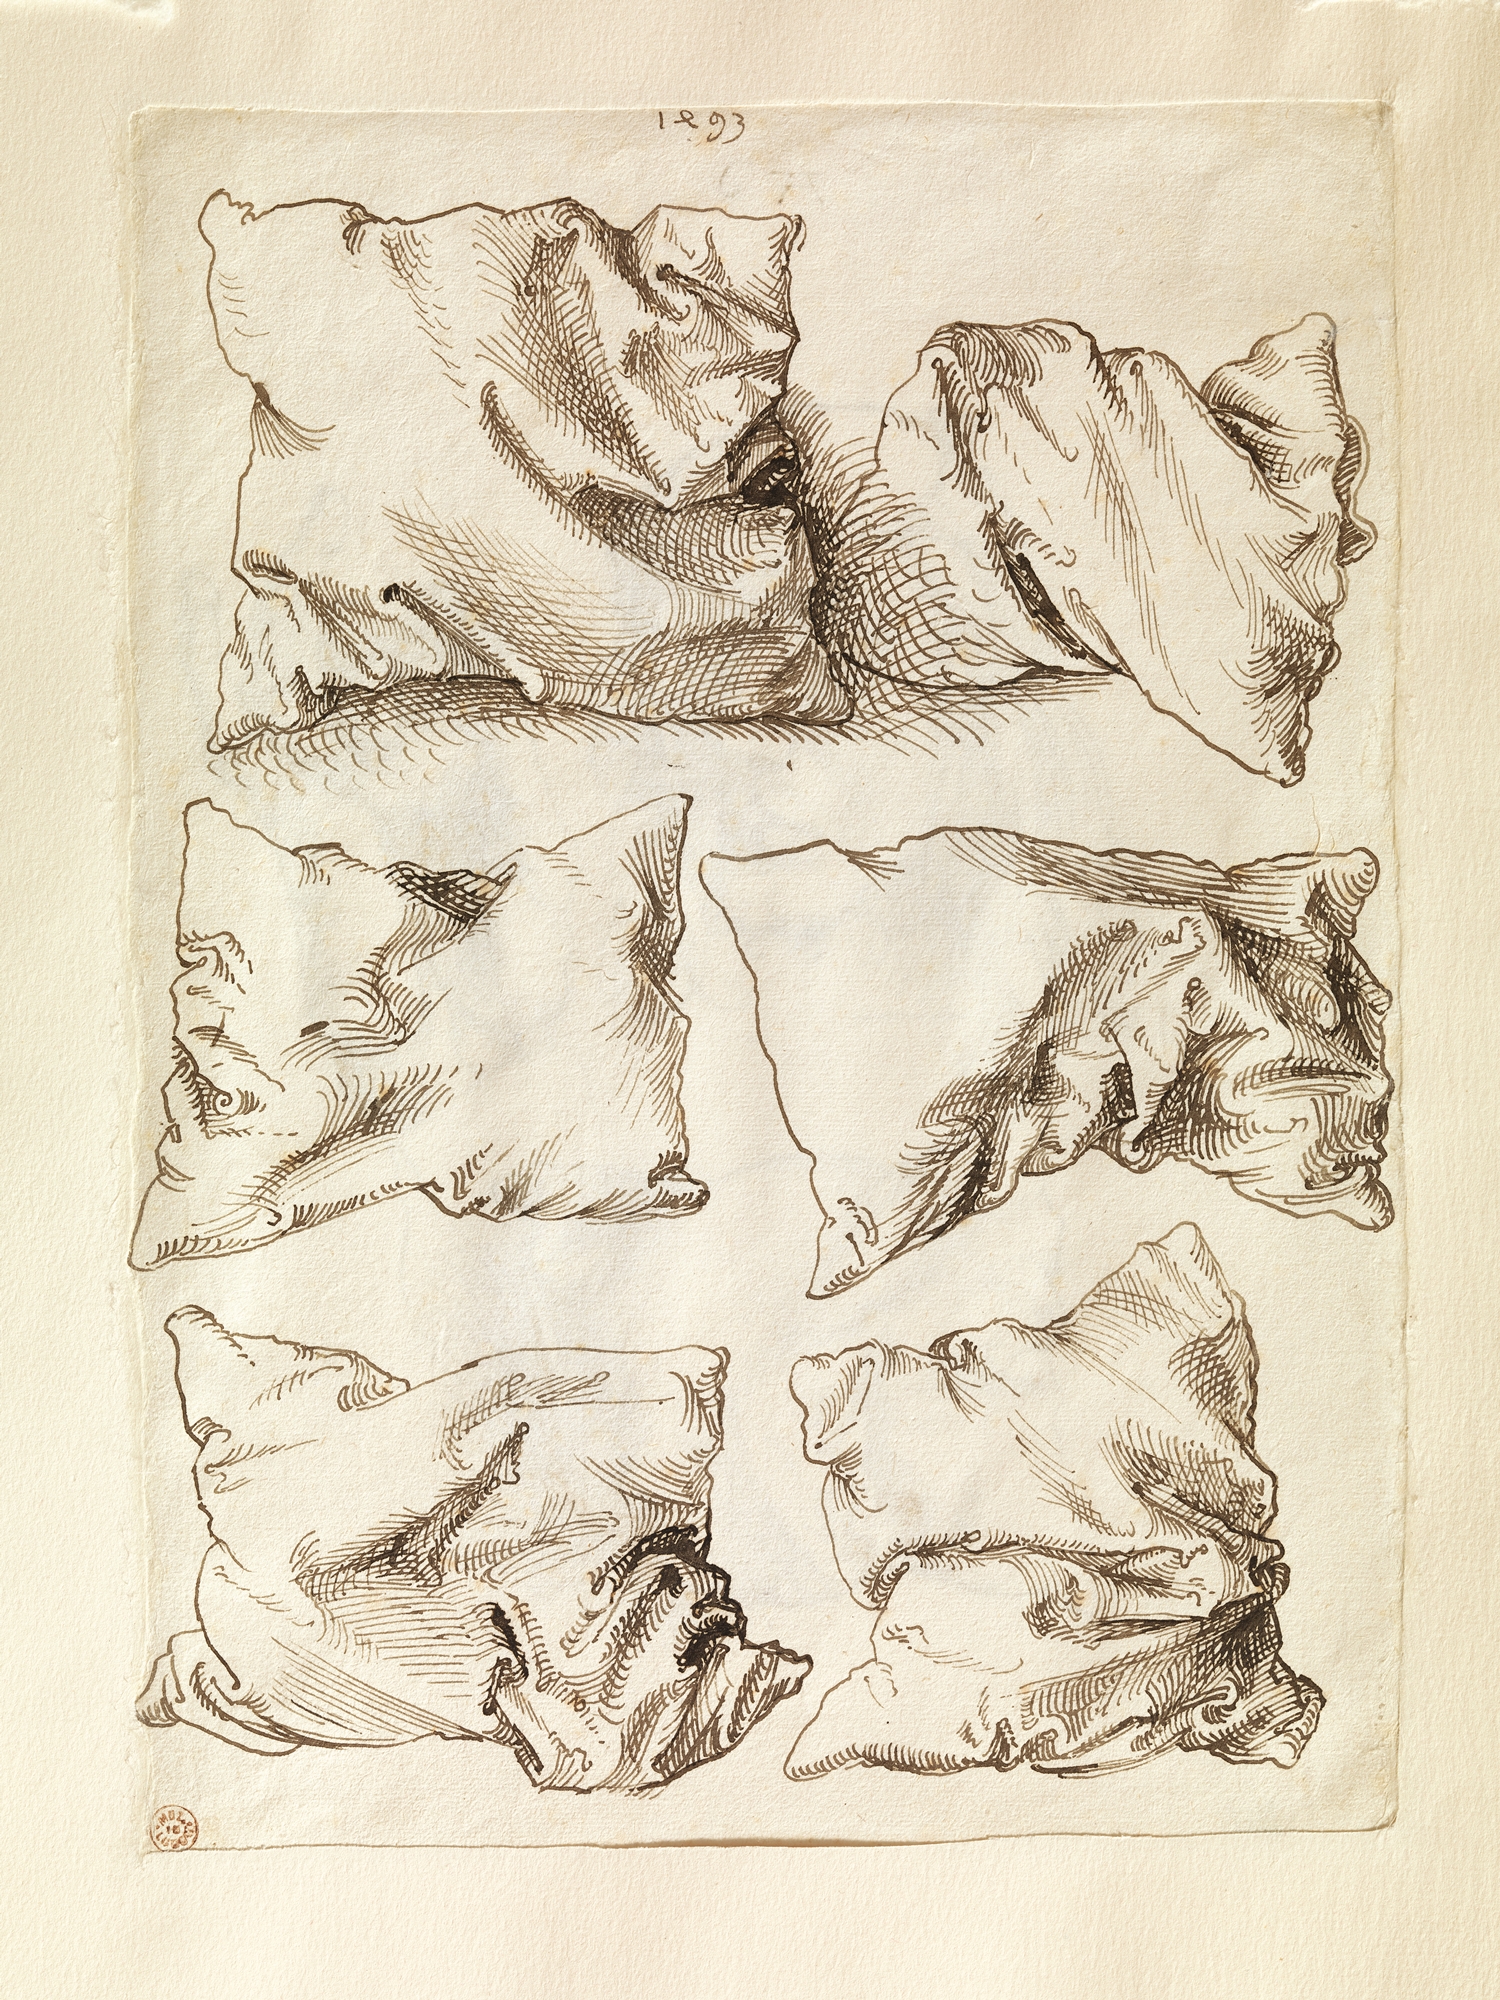 베개에 대한 여섯 가지 연구  by Albrecht Dürer - 1493 - 27.8 x 20.2 cm 